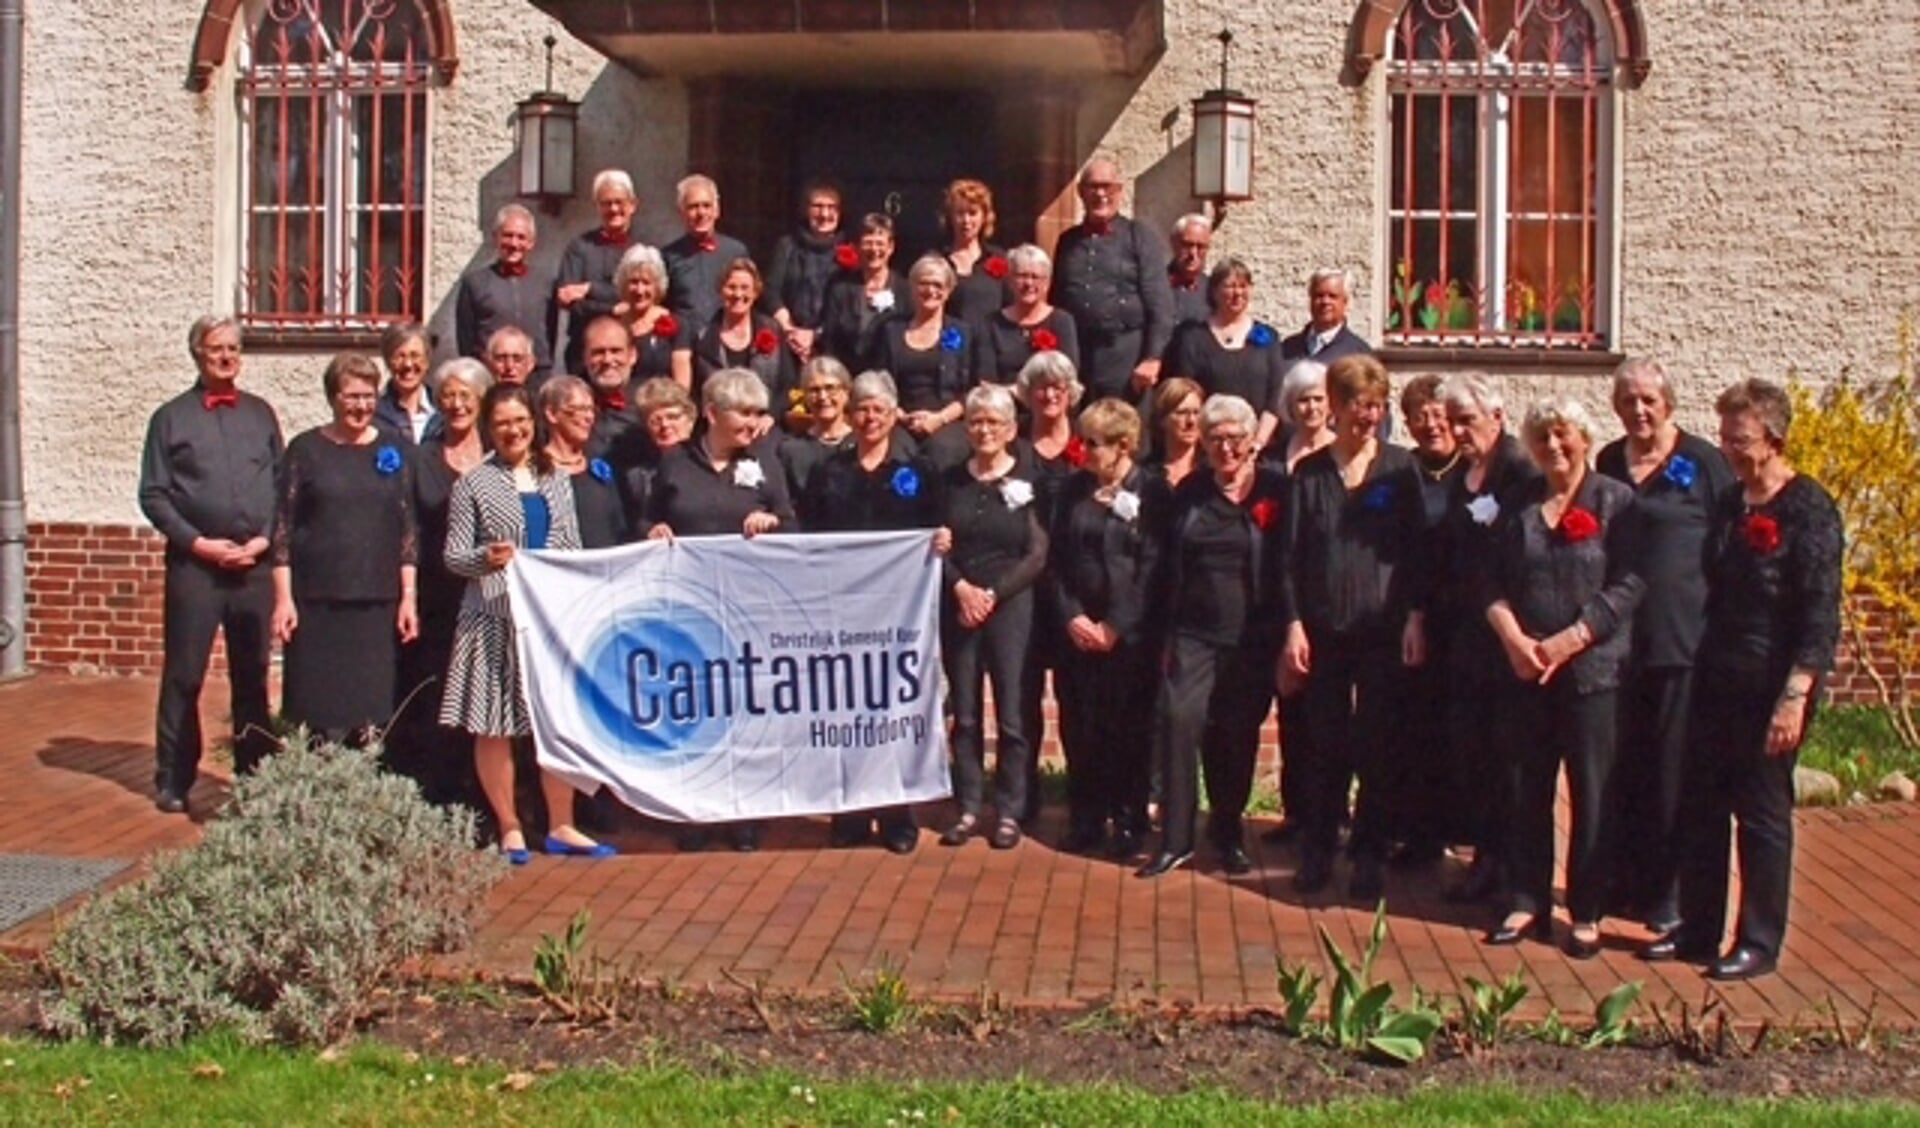 Het Cantamus-koor uit Hoofddorp voert de St. John Passion op. 